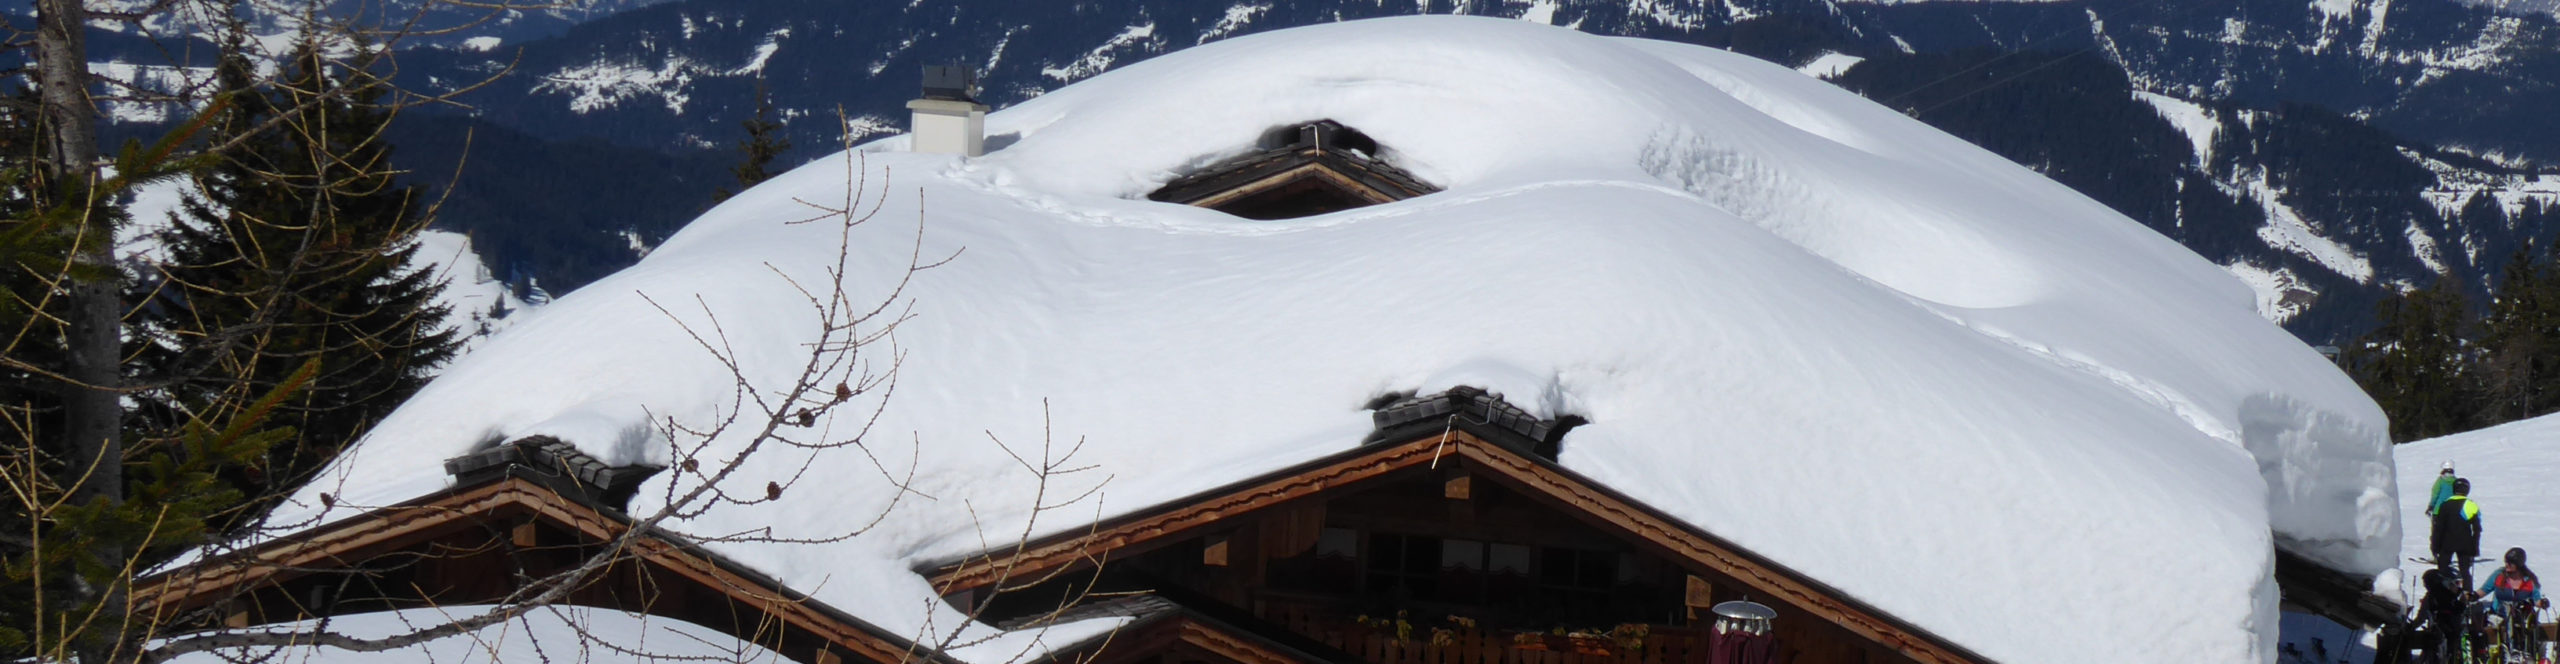 SKIWELT WILDER KAISER – SCHEFFAU – Skiwochenende mit 3 Skitagen in eines der größten Skigebiete Österreichs 